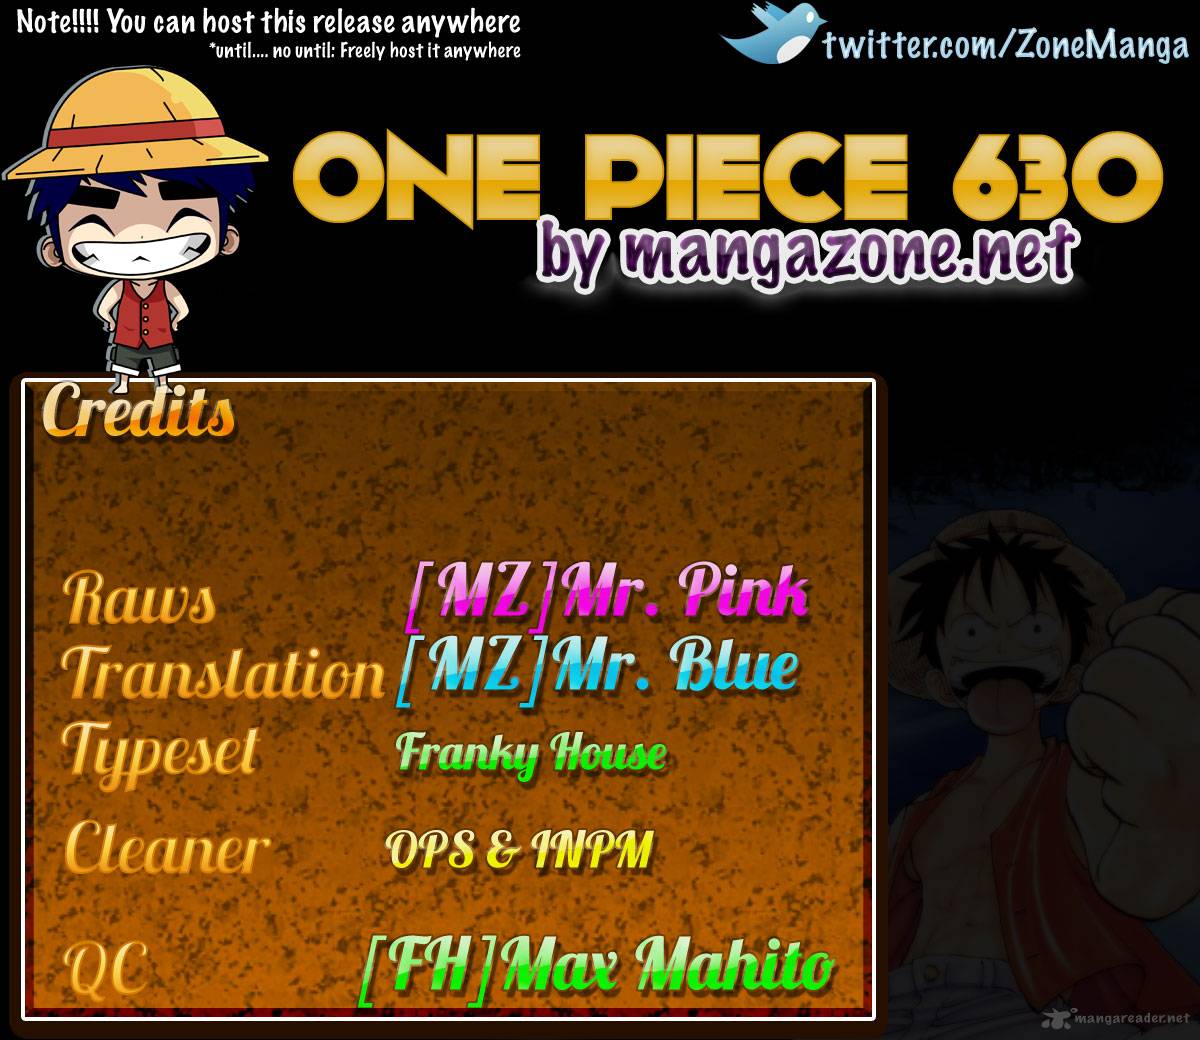 One Piece 630 19